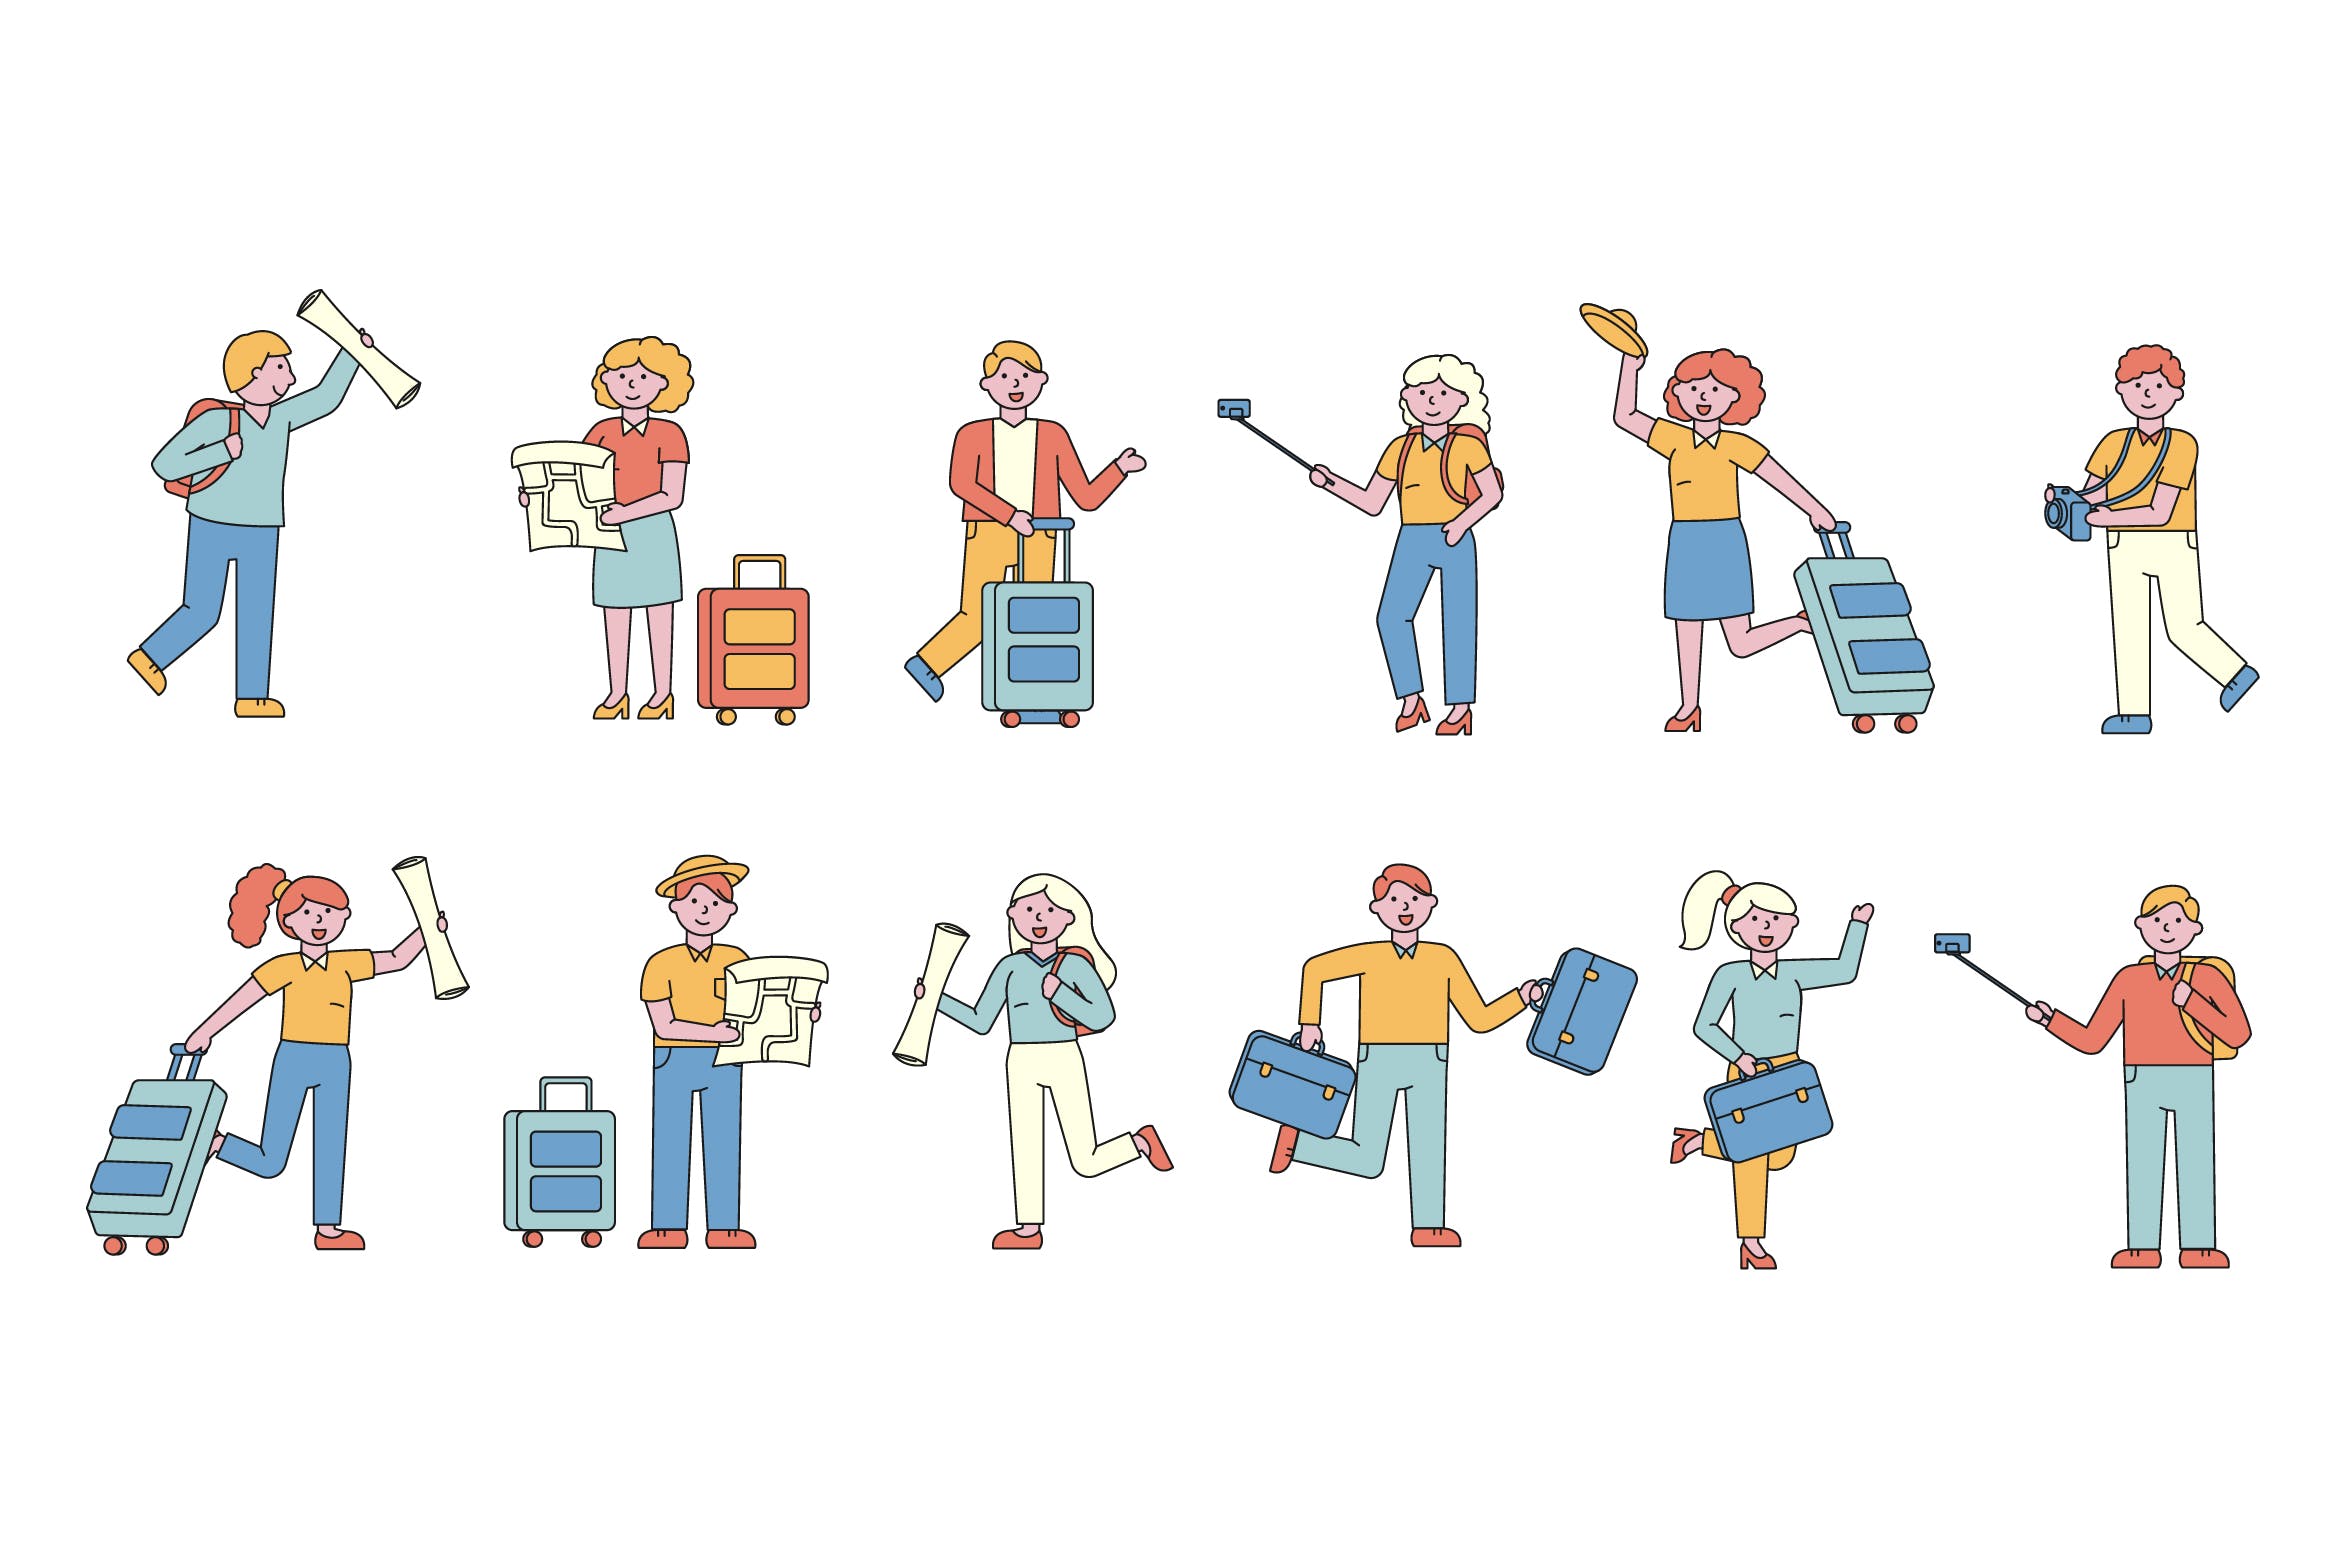 旅行人物形象线条艺术矢量插画大洋岛精选素材 Tourists Lineart People Character Collection插图